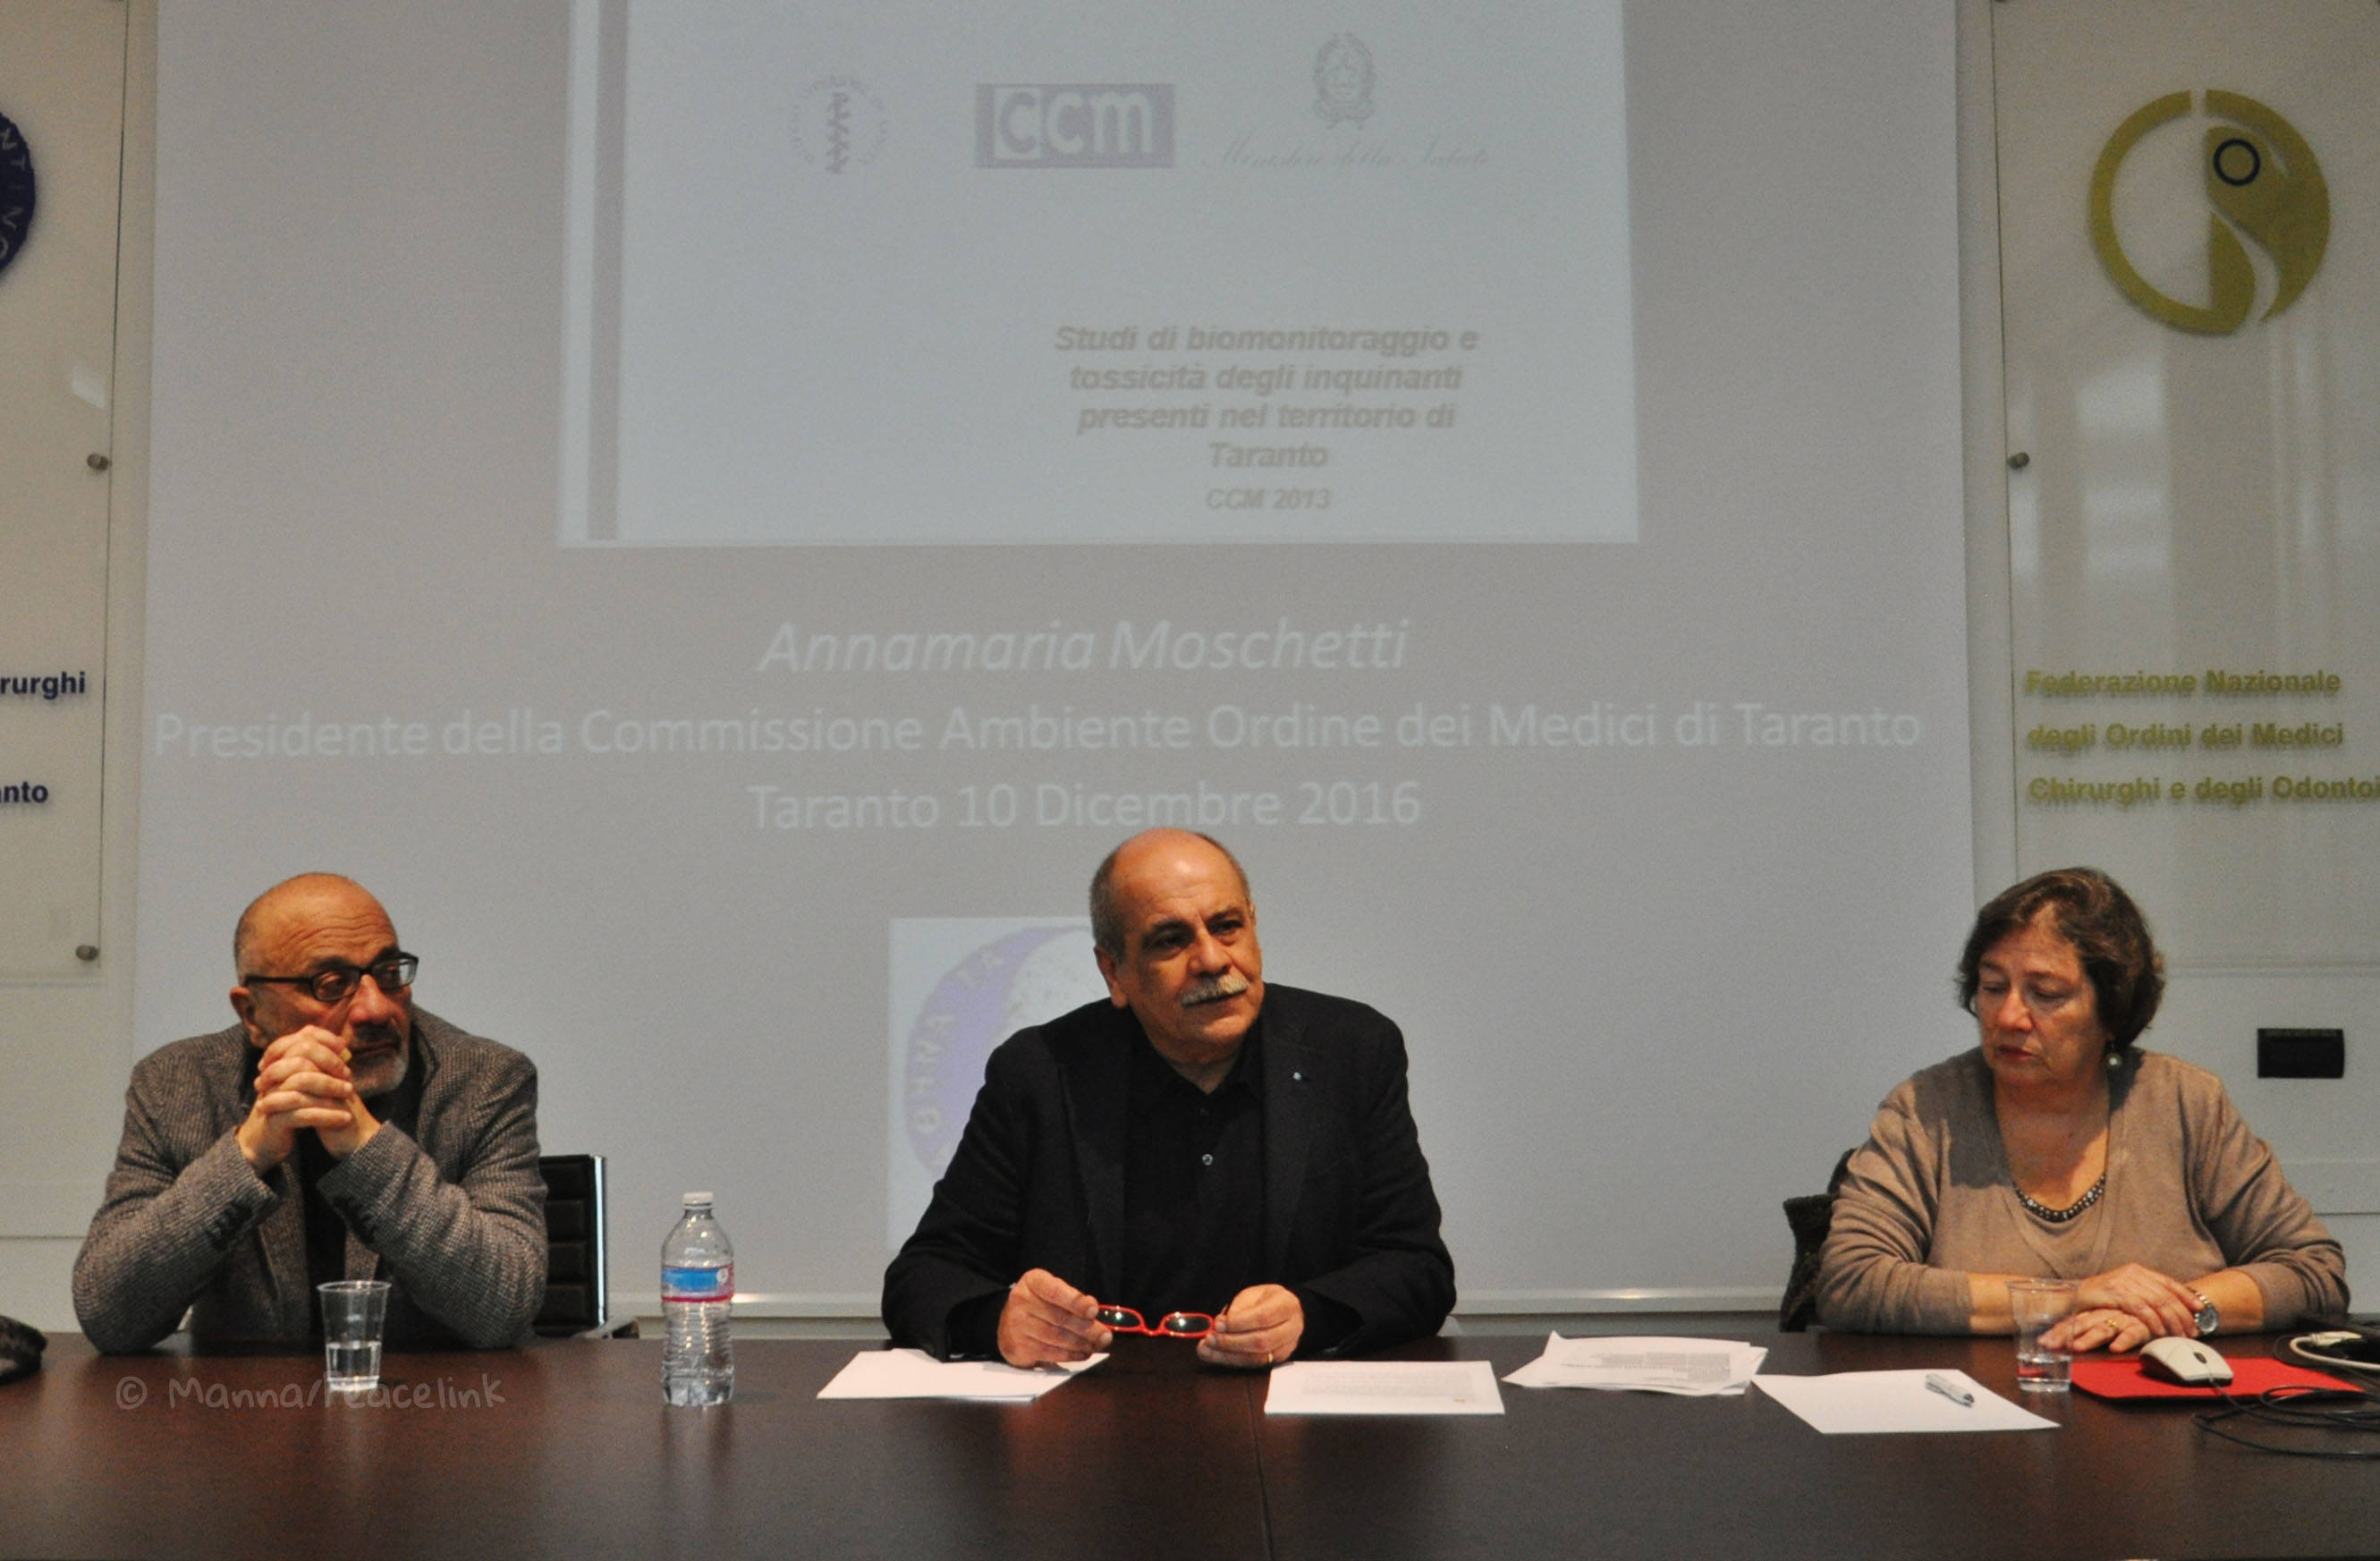 La conferenza stampa dell'Ordine dei Medici del 10 dicembre 2016